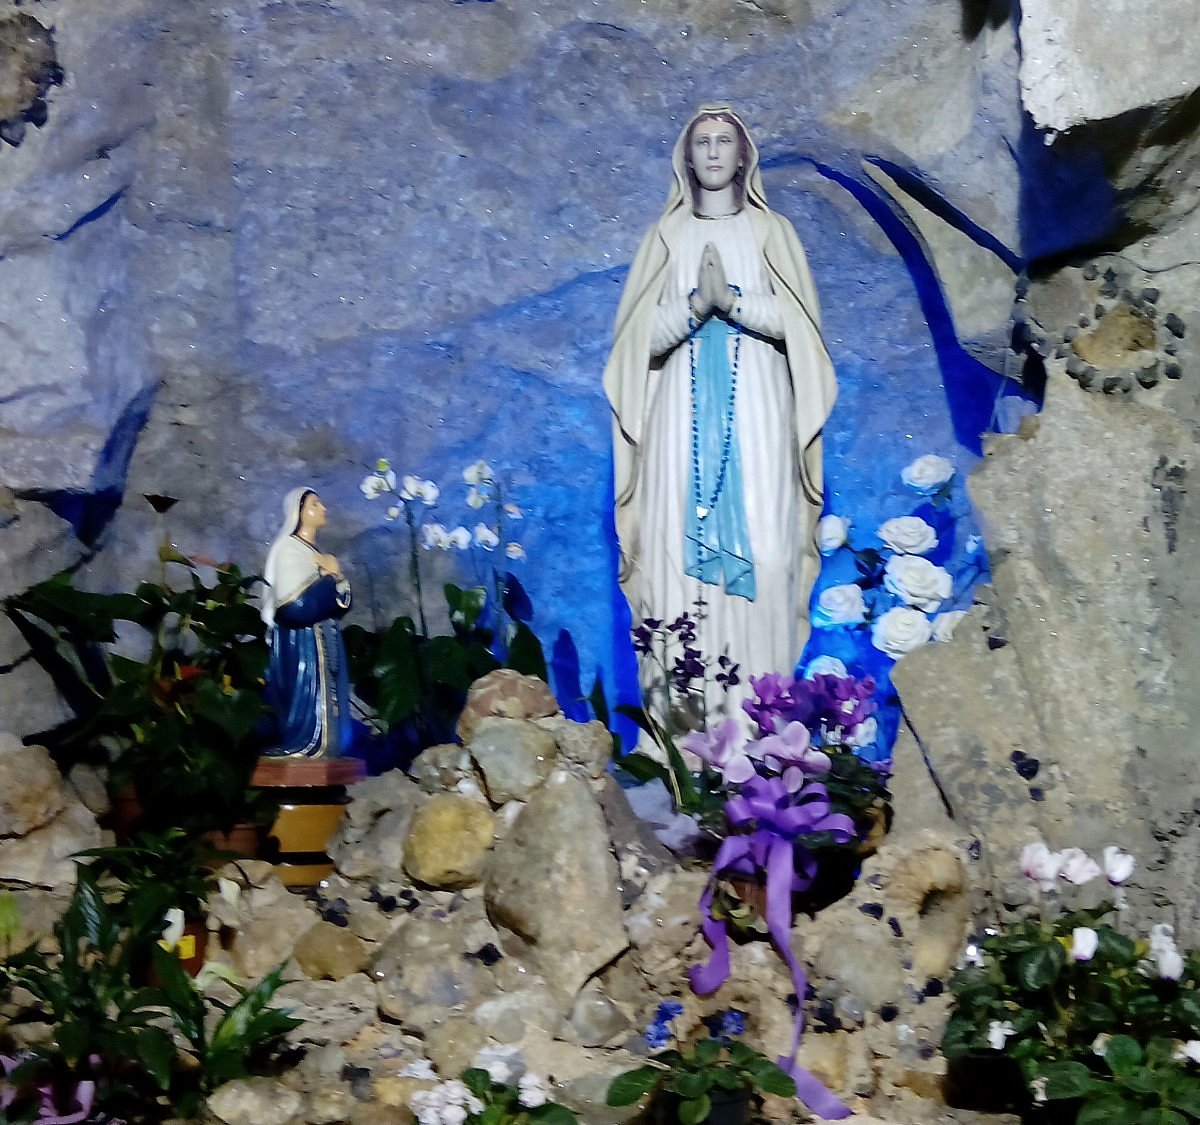 Nossa Senhora de Lourdes Grotto (Veranopolis, Brazil): Address, Phone ...